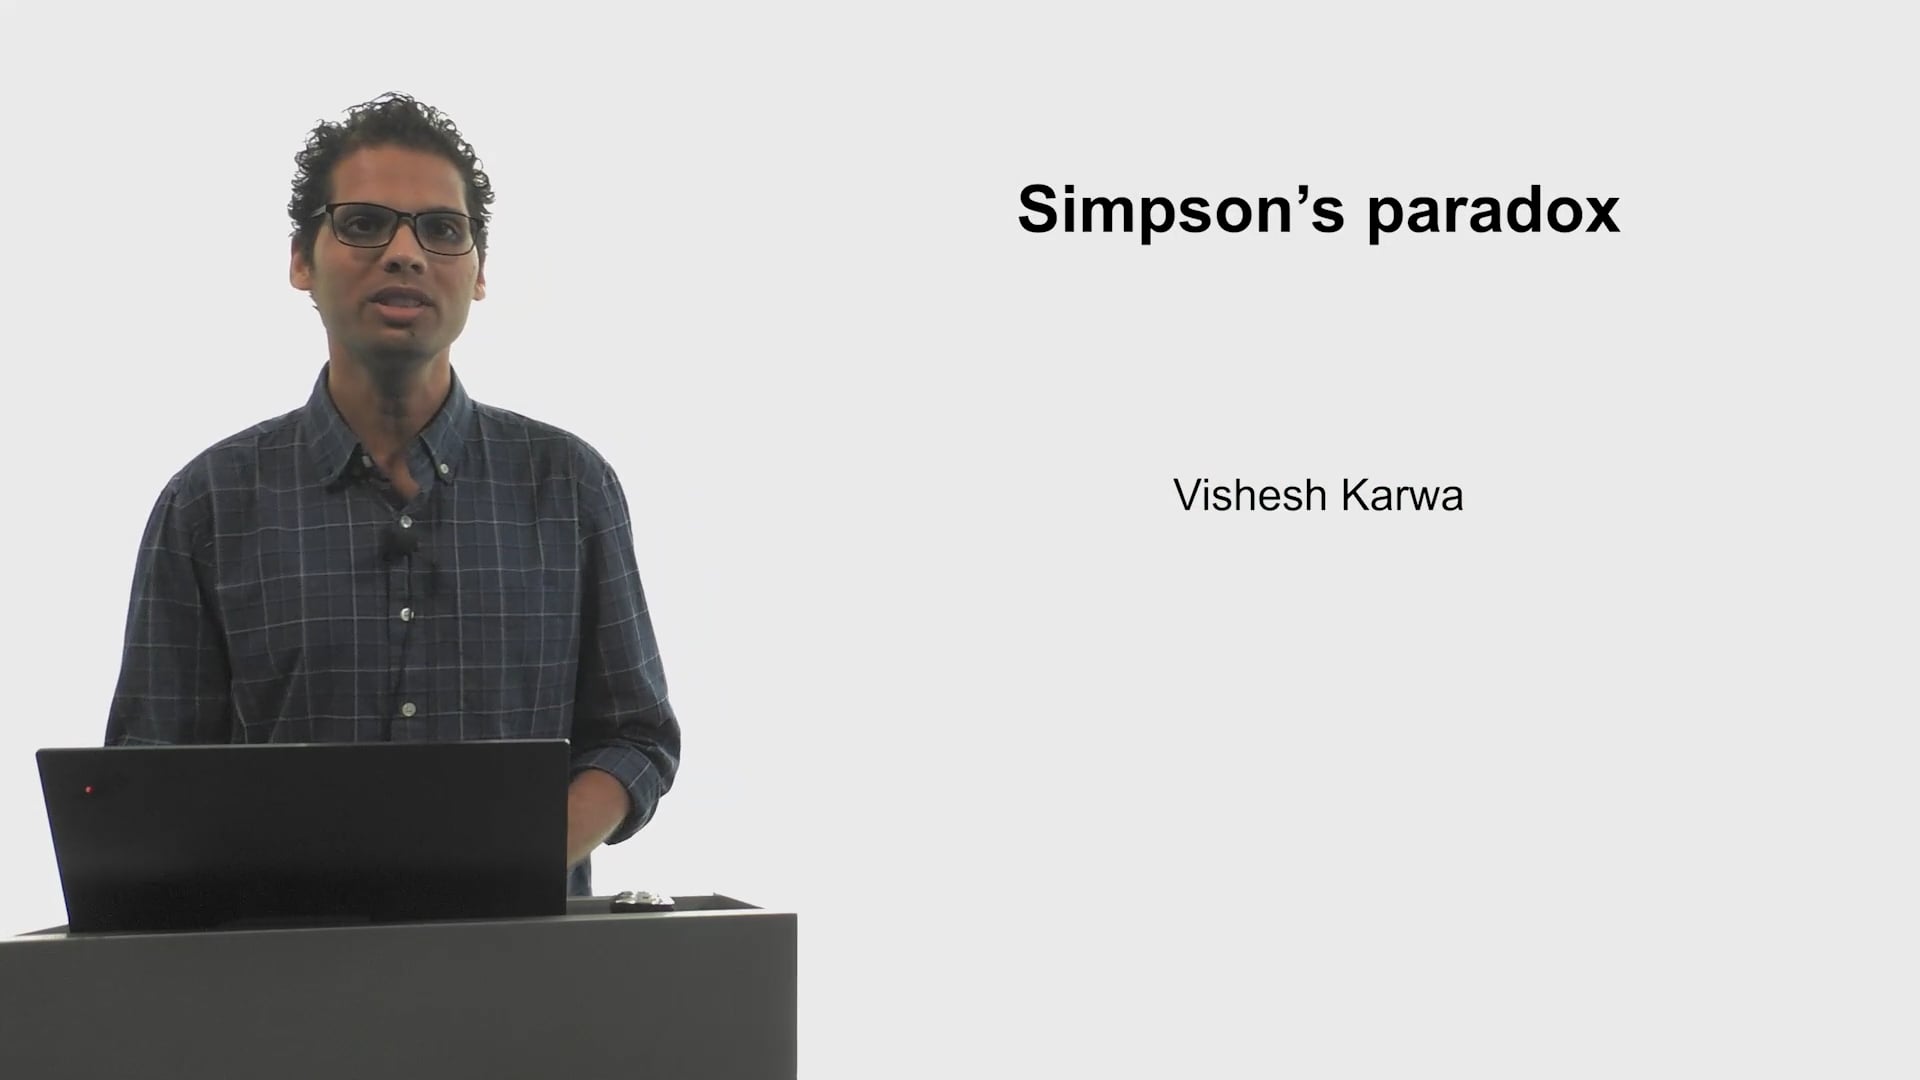 Simpson’s Paradox